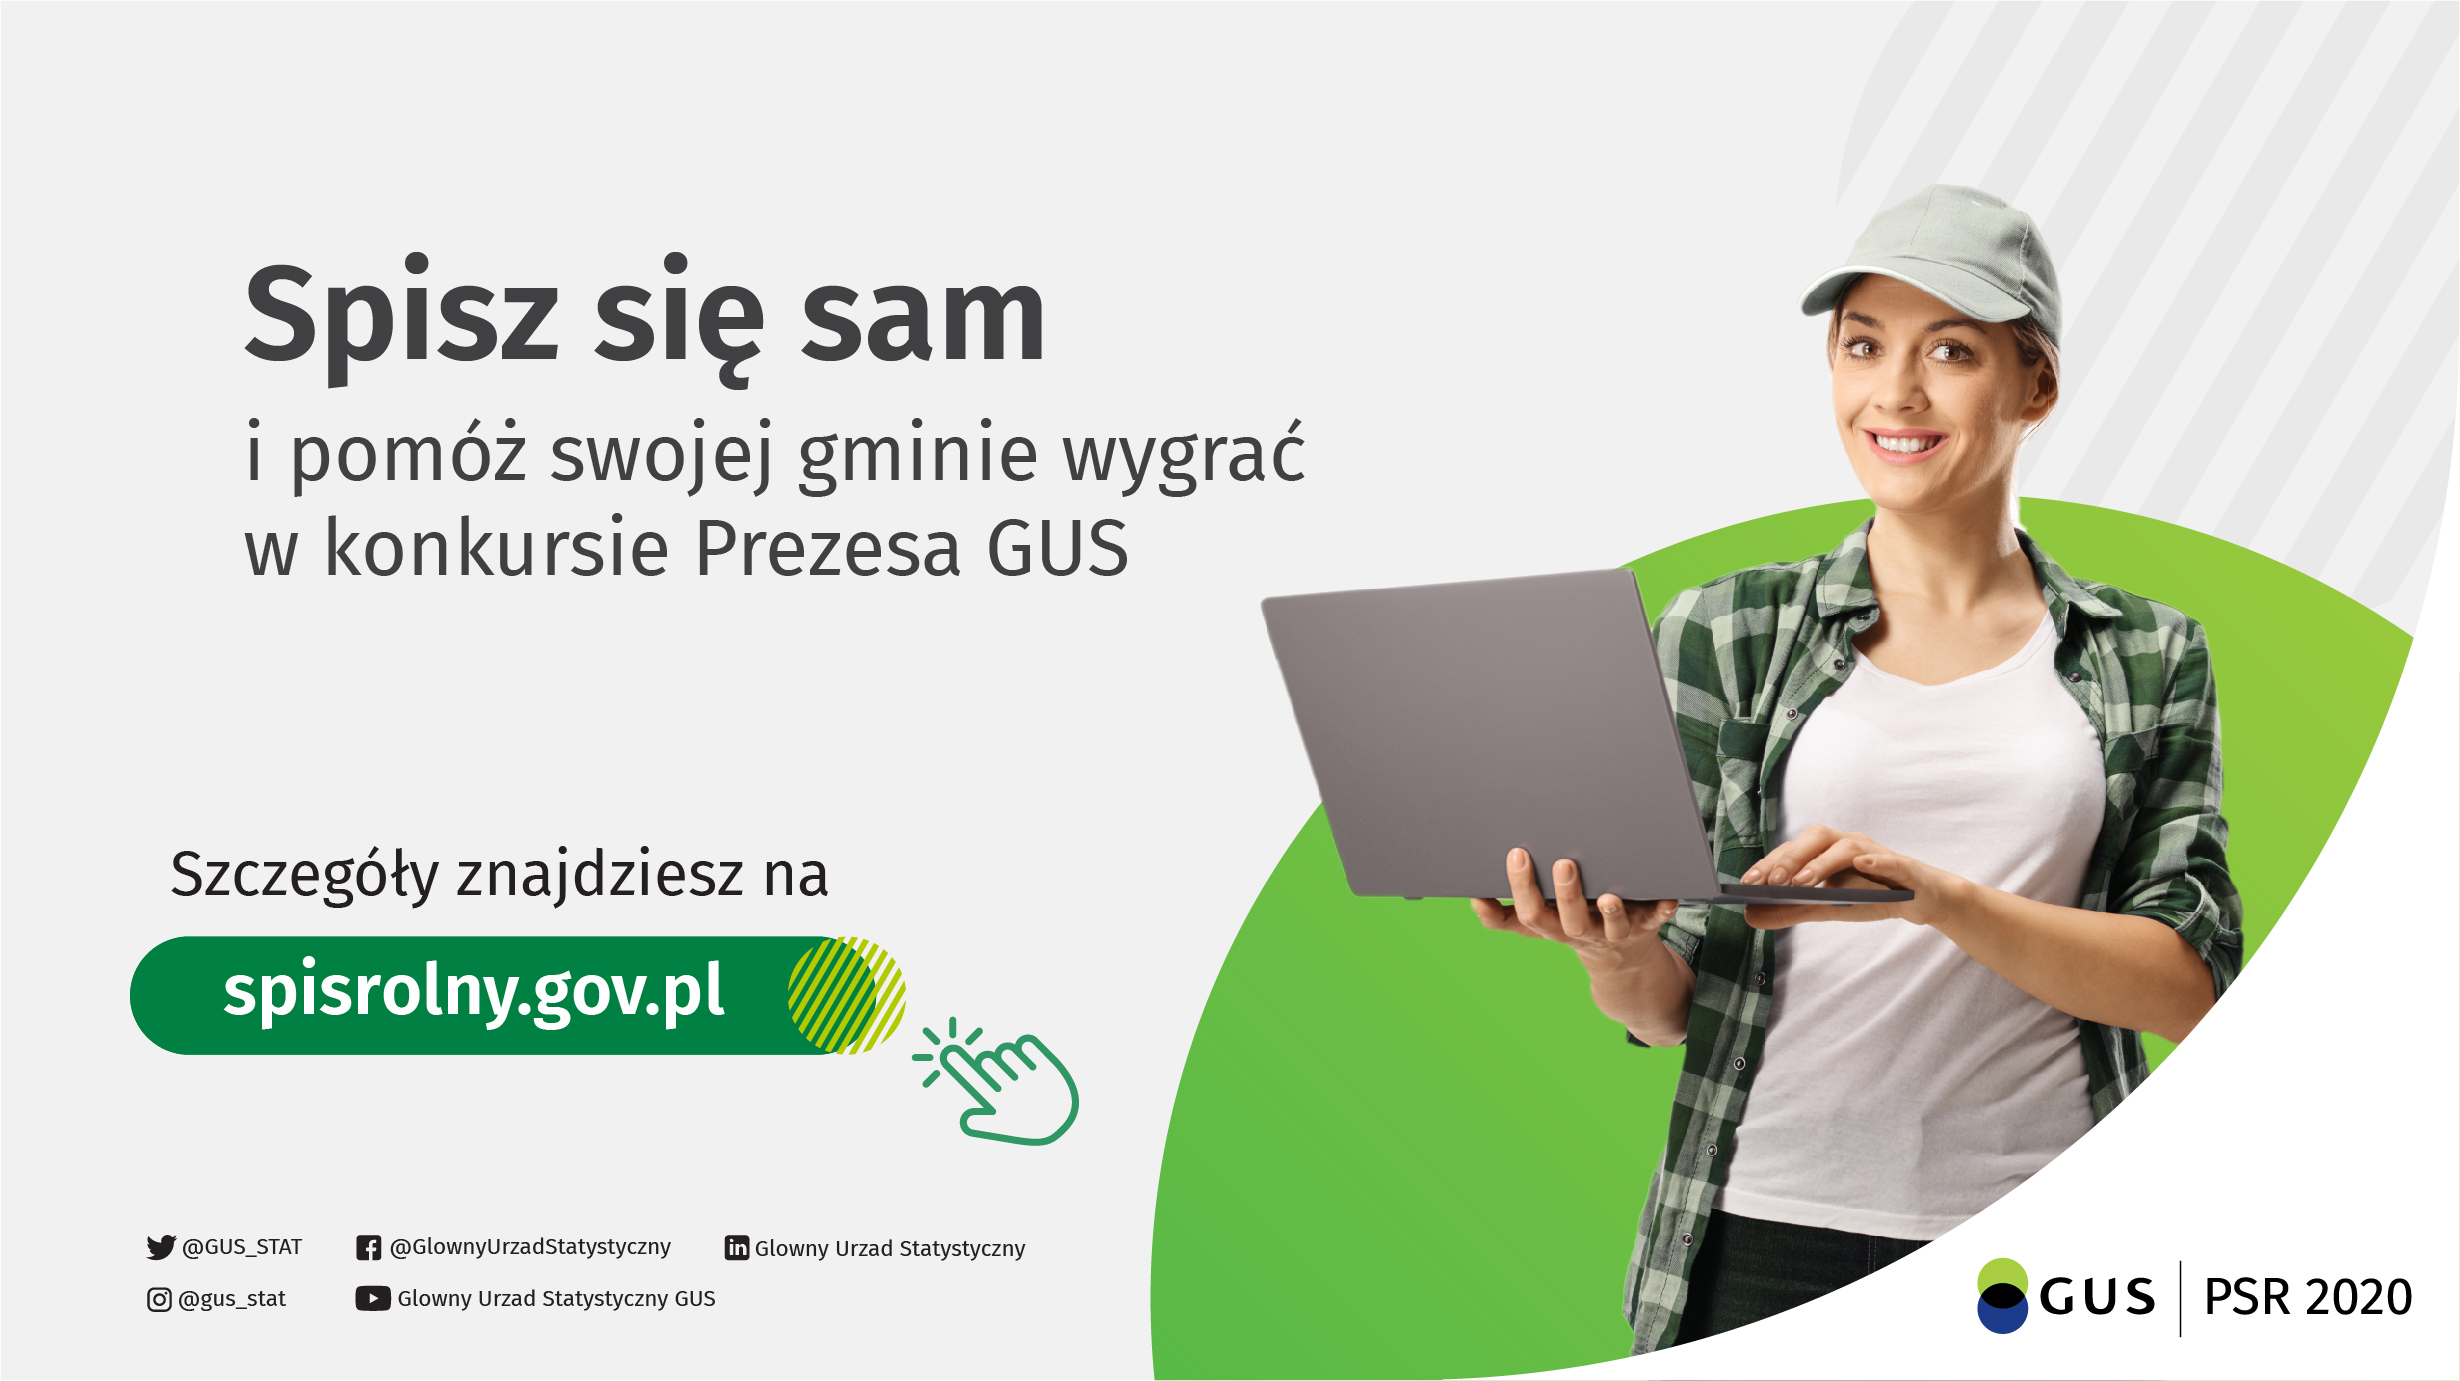 Grafika promująca samospis, dzięki któremu gmina może wygrać cenne nagrody w konkursie Prezesa GUS. Szczegóły na stronie spisrolny.gov.pl